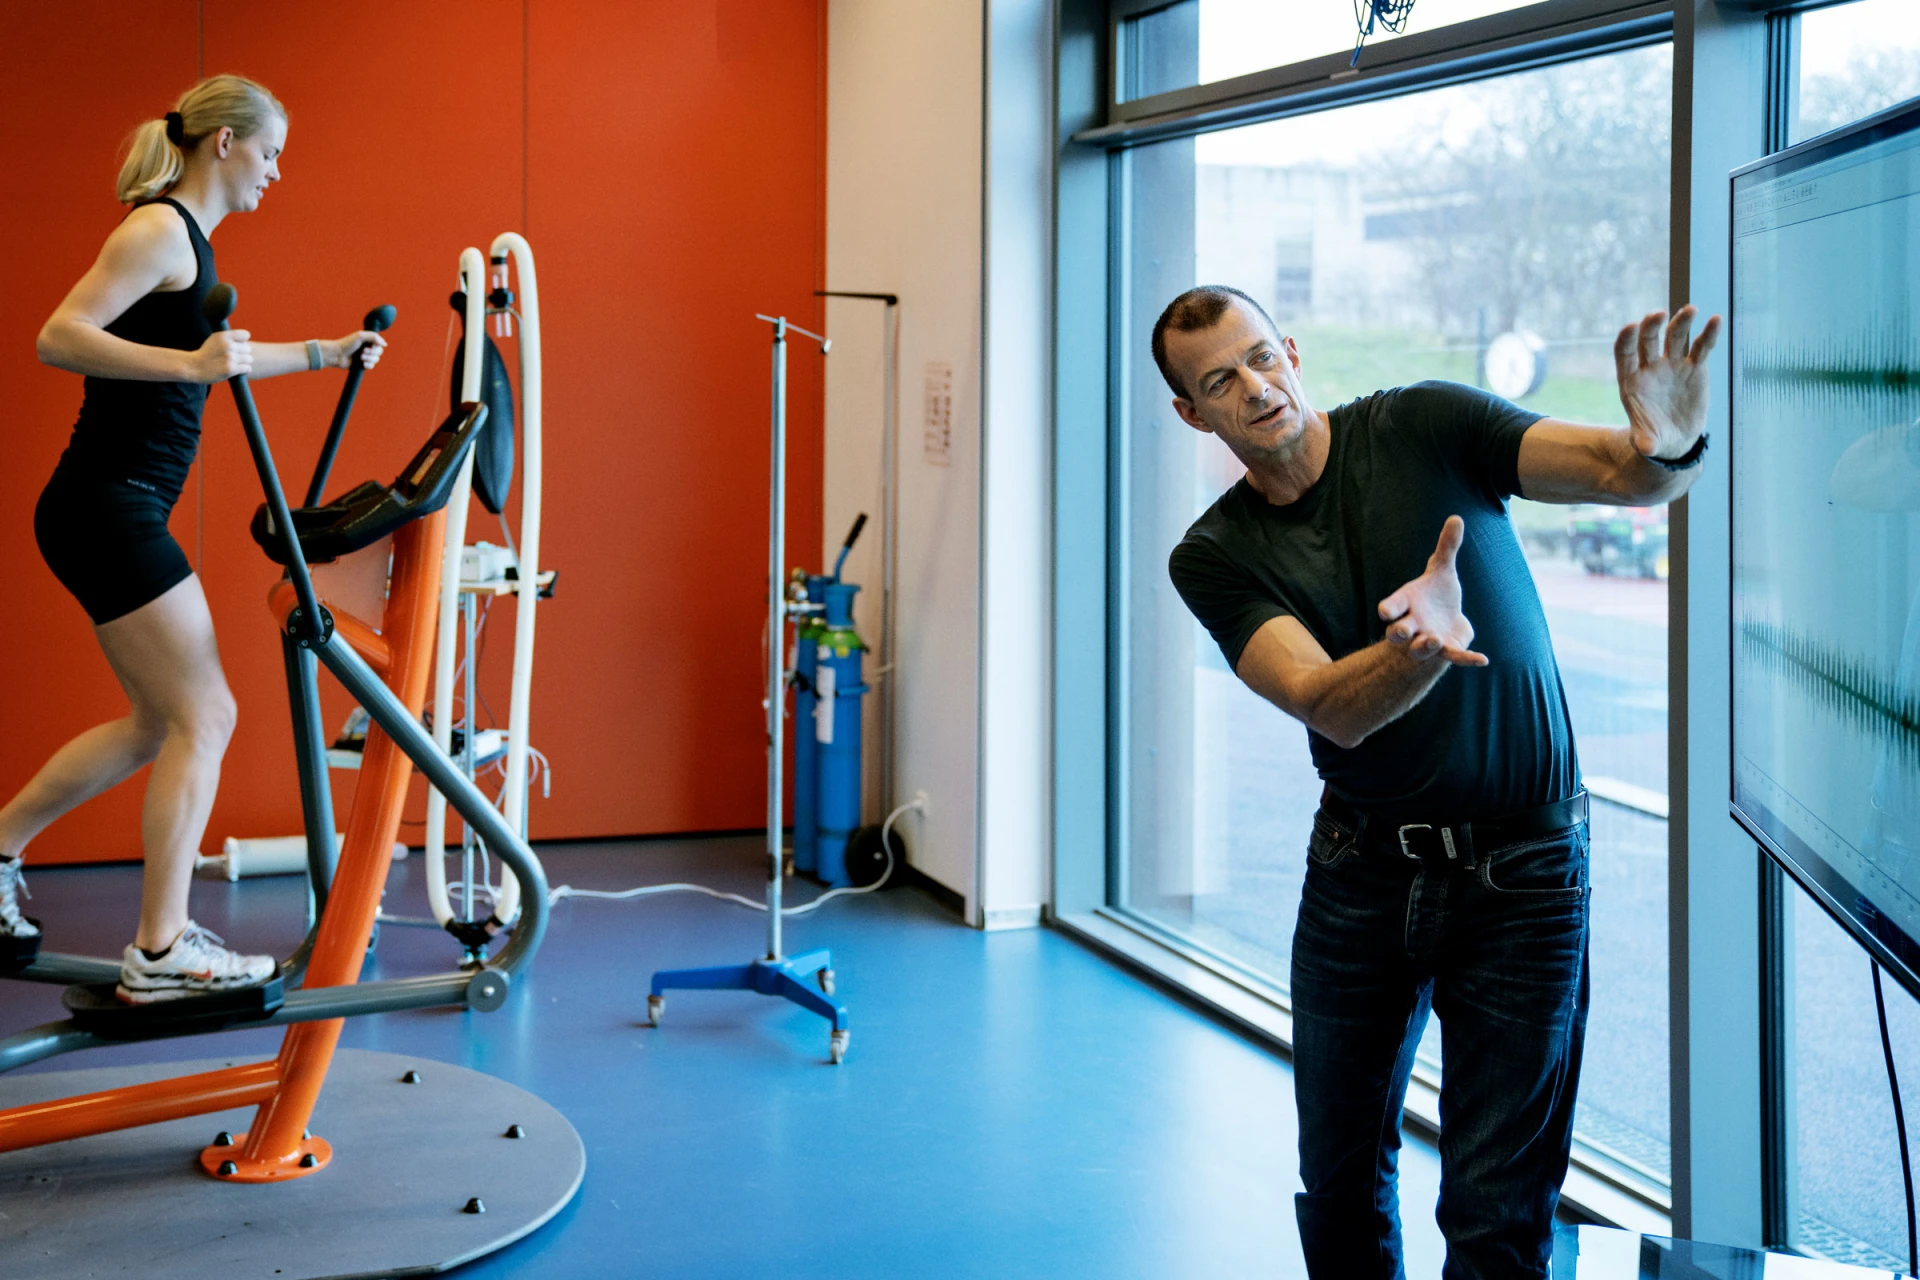 kompan fitness institute genomför forskning om fysisk förmåga